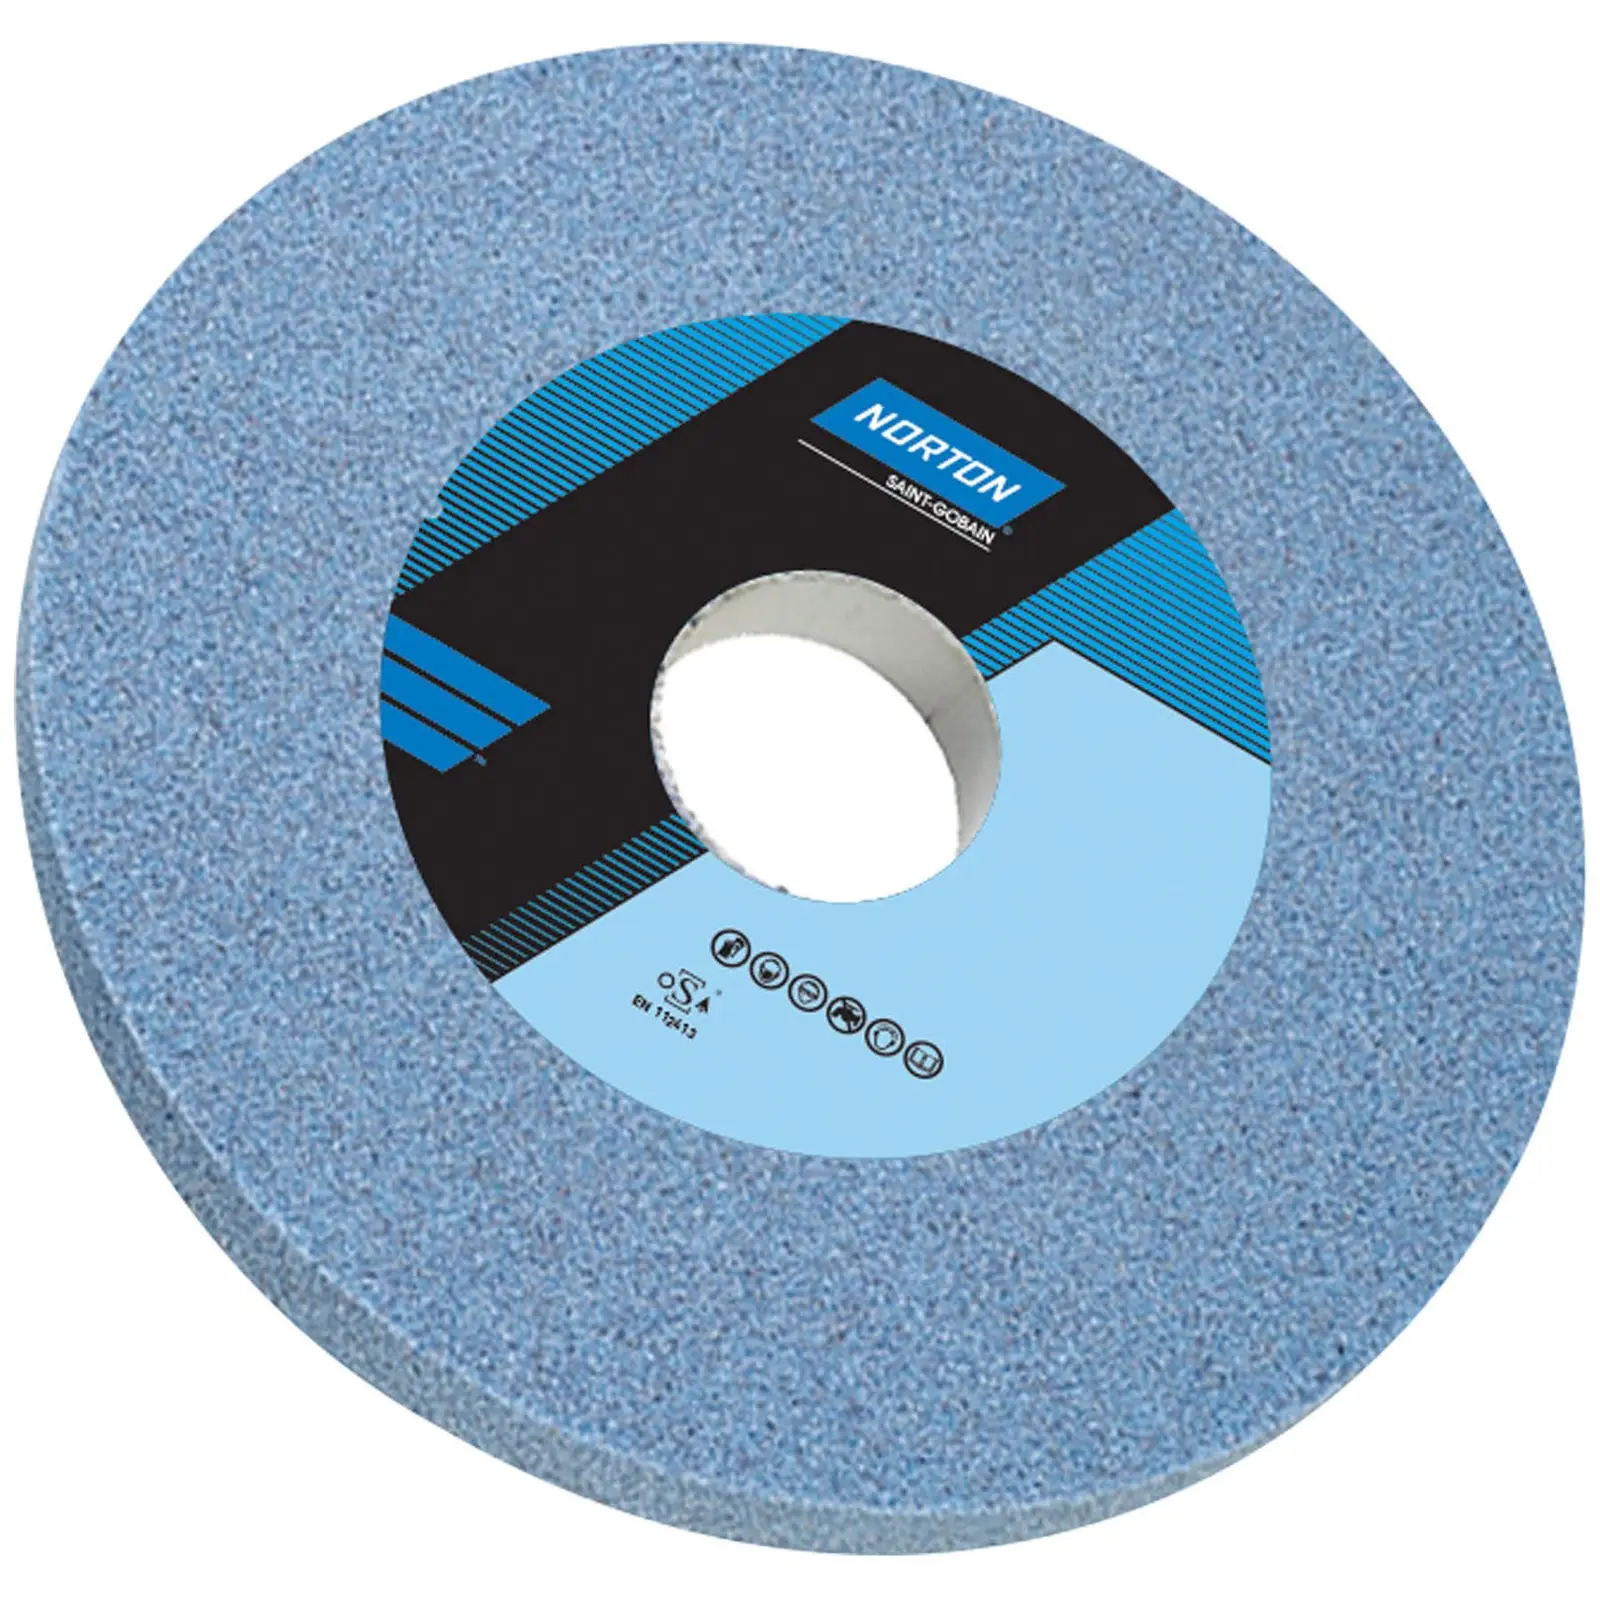 Grinding Wheel - Ø 250 mm -46 grain - hardness K -Aluminium oxide (ceramic)